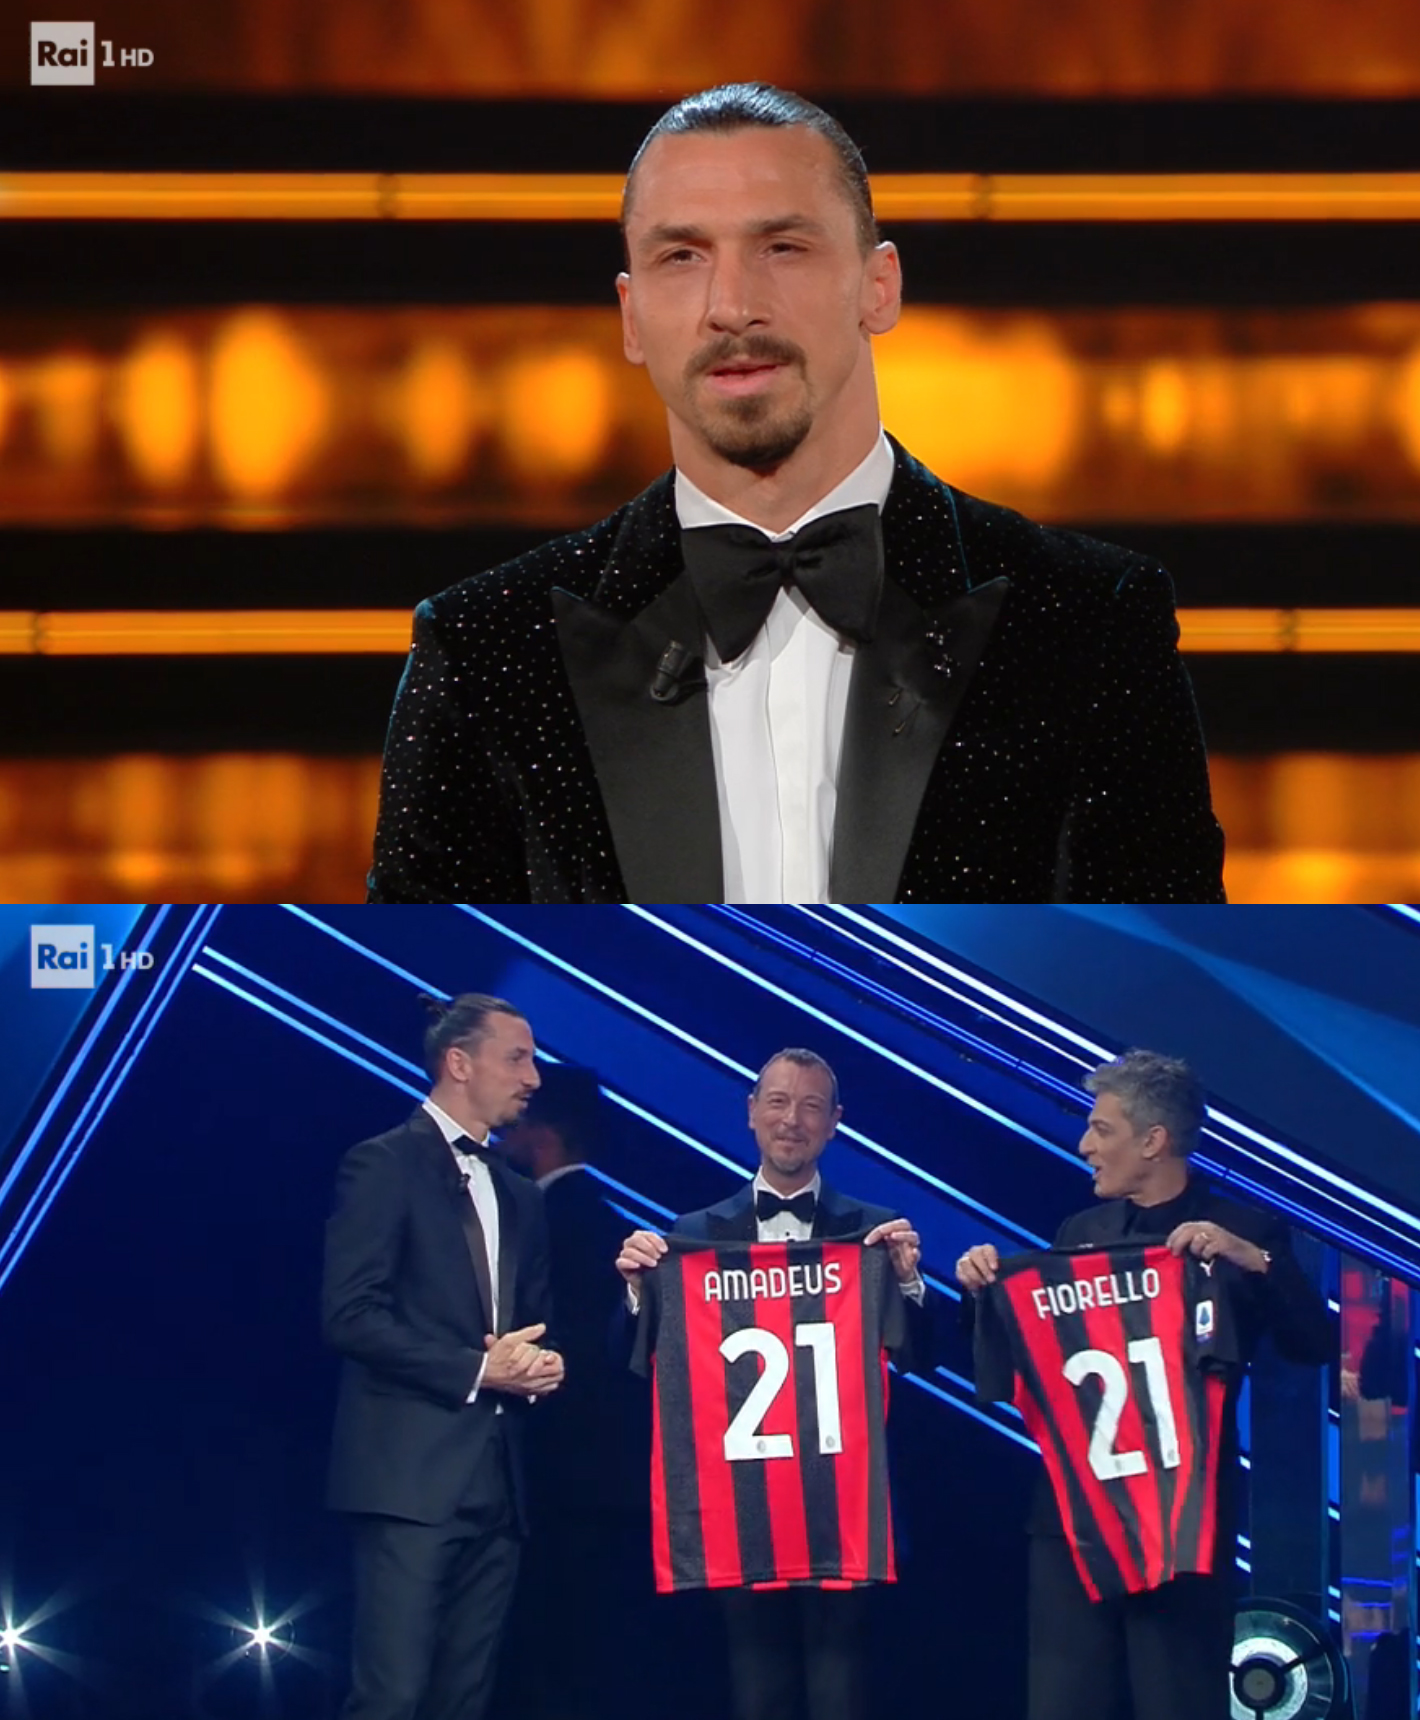 Sanremo 2021, 5a serata: Zlatan Ibrahimović nel suo monologo prima, nella consegna della maglia del Milan a Amadeus e Fiorello dopo